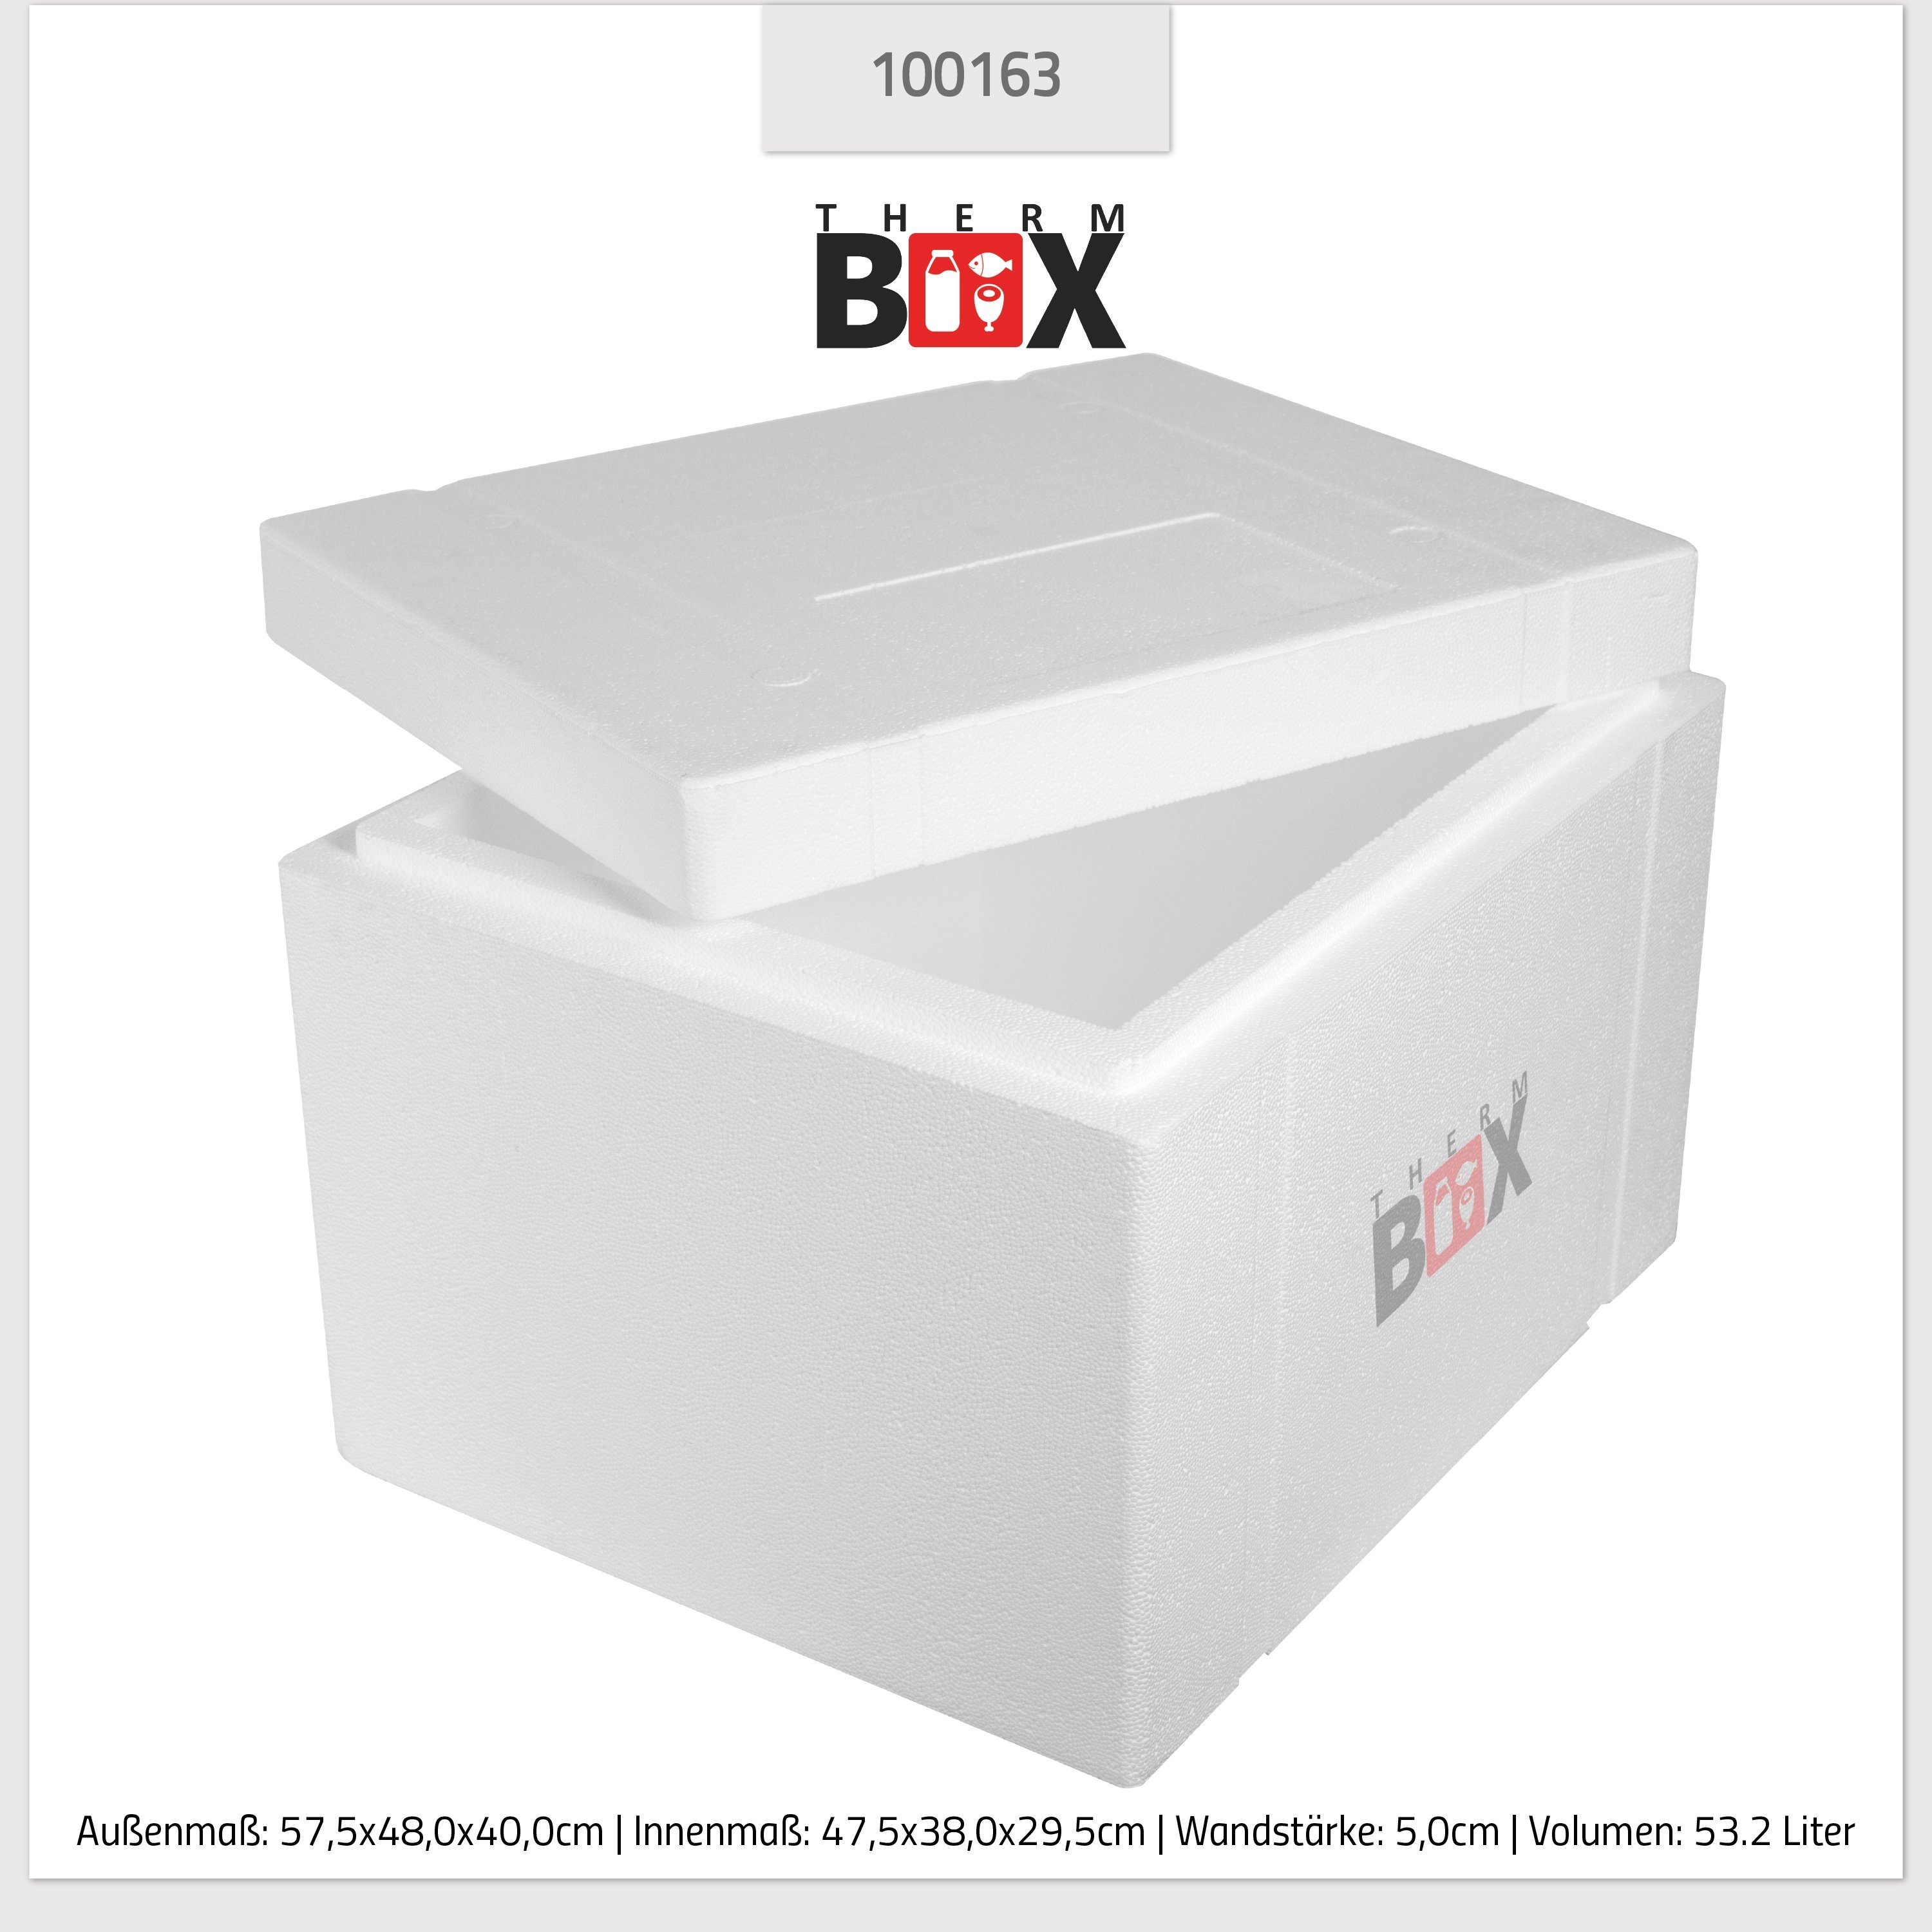 THERM-BOX Thermobehälter Styroporbox 53W Wand: Kühlbox Isolierbox Box Styropor-Verdichtet, Wiederverwendbar 0-tlg., (1, mit Thermobox Karton), Warmhaltebox 5cm Deckel im 53,2L Innenmaß:47x38x29cm